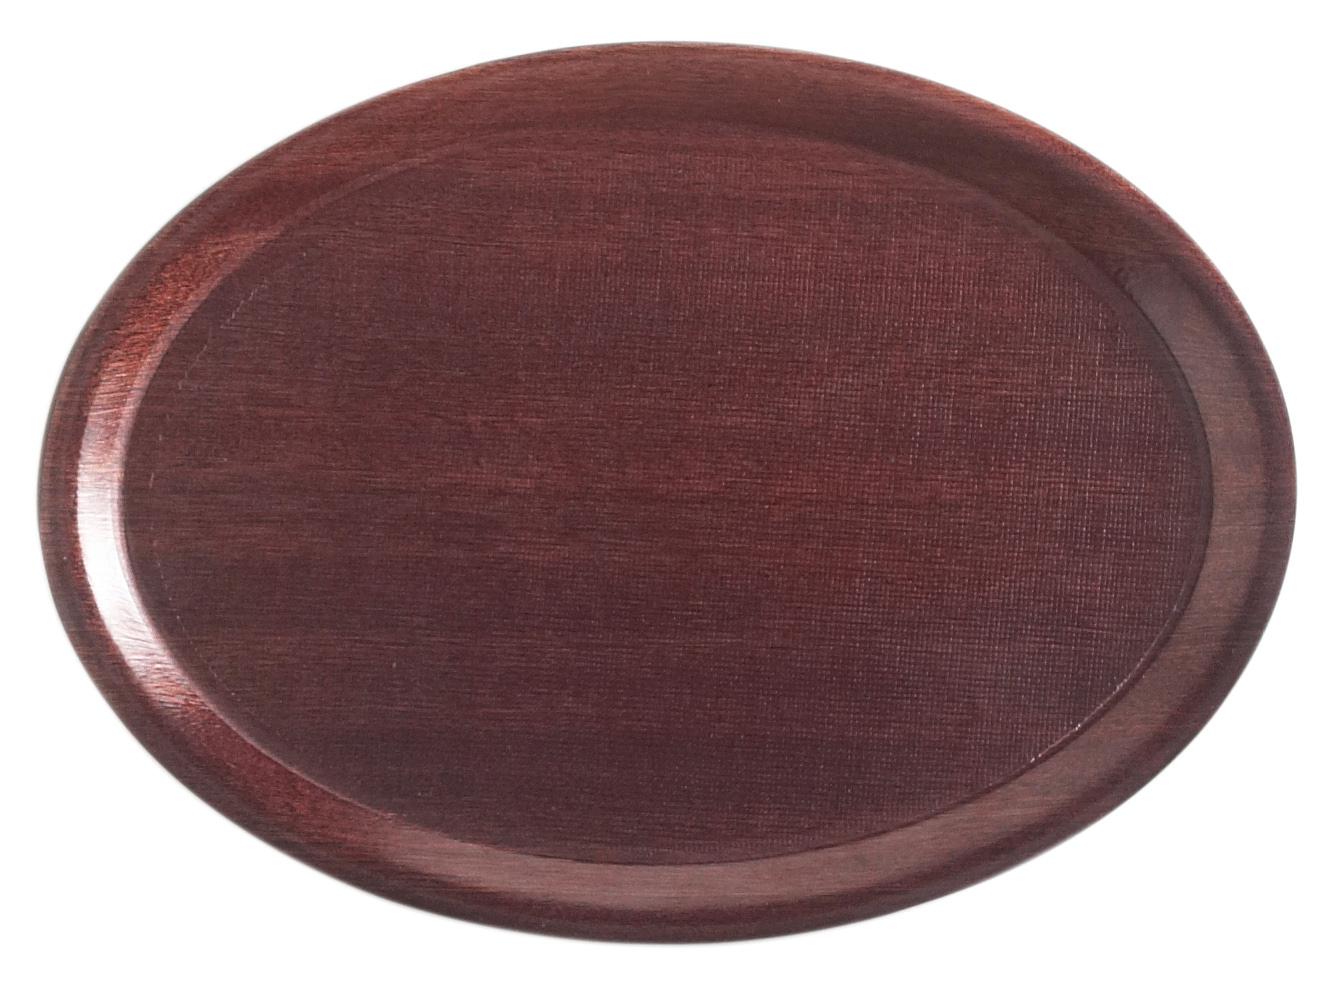 Mykonos laminate tray, oval with non-slip surface, mahogany, 210x290mm